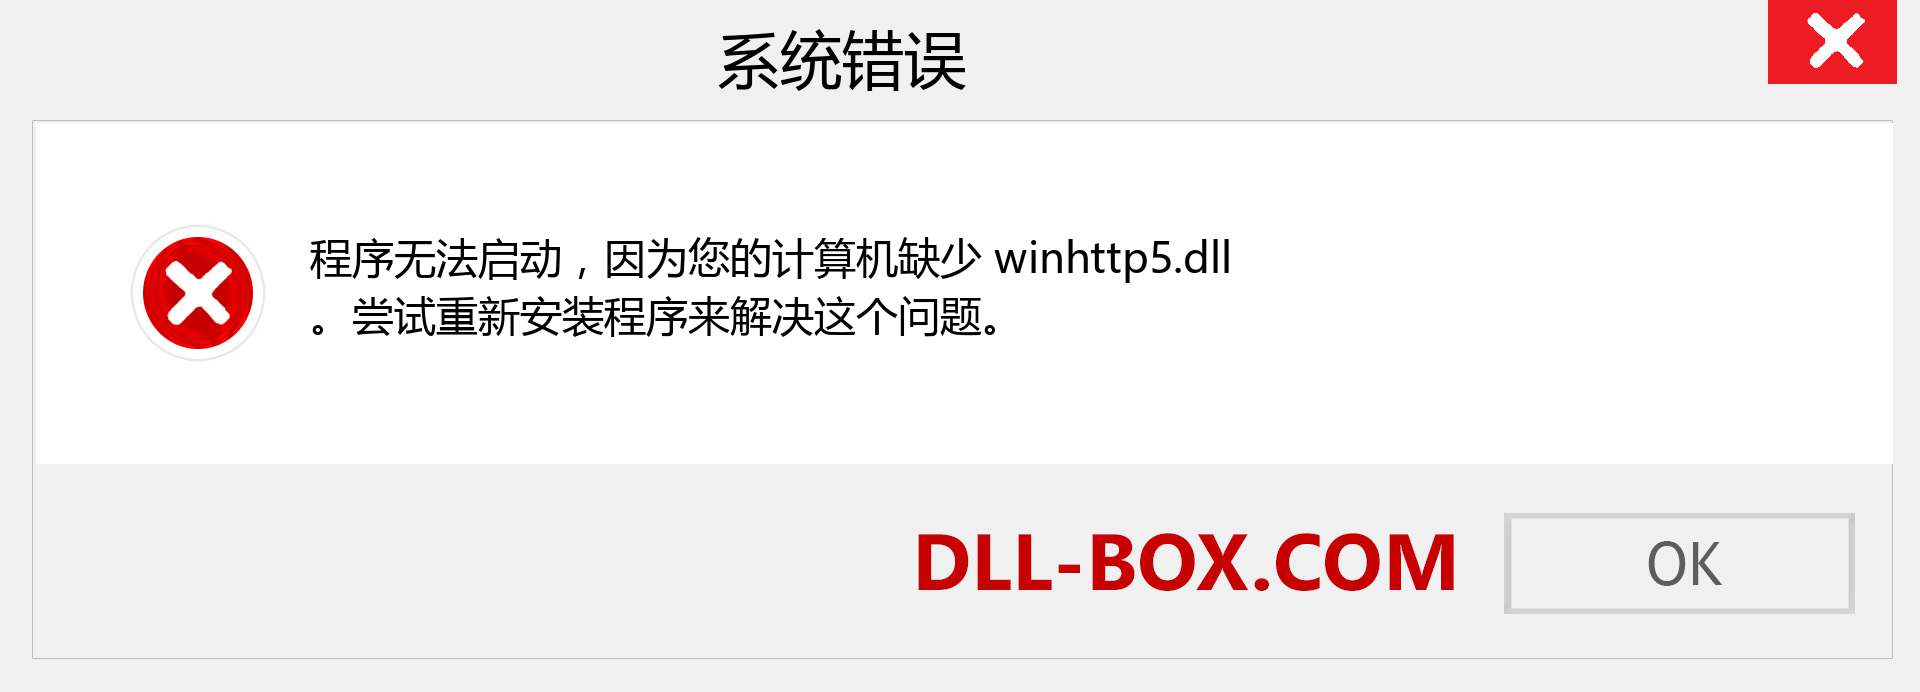 winhttp5.dll 文件丢失？。 适用于 Windows 7、8、10 的下载 - 修复 Windows、照片、图像上的 winhttp5 dll 丢失错误